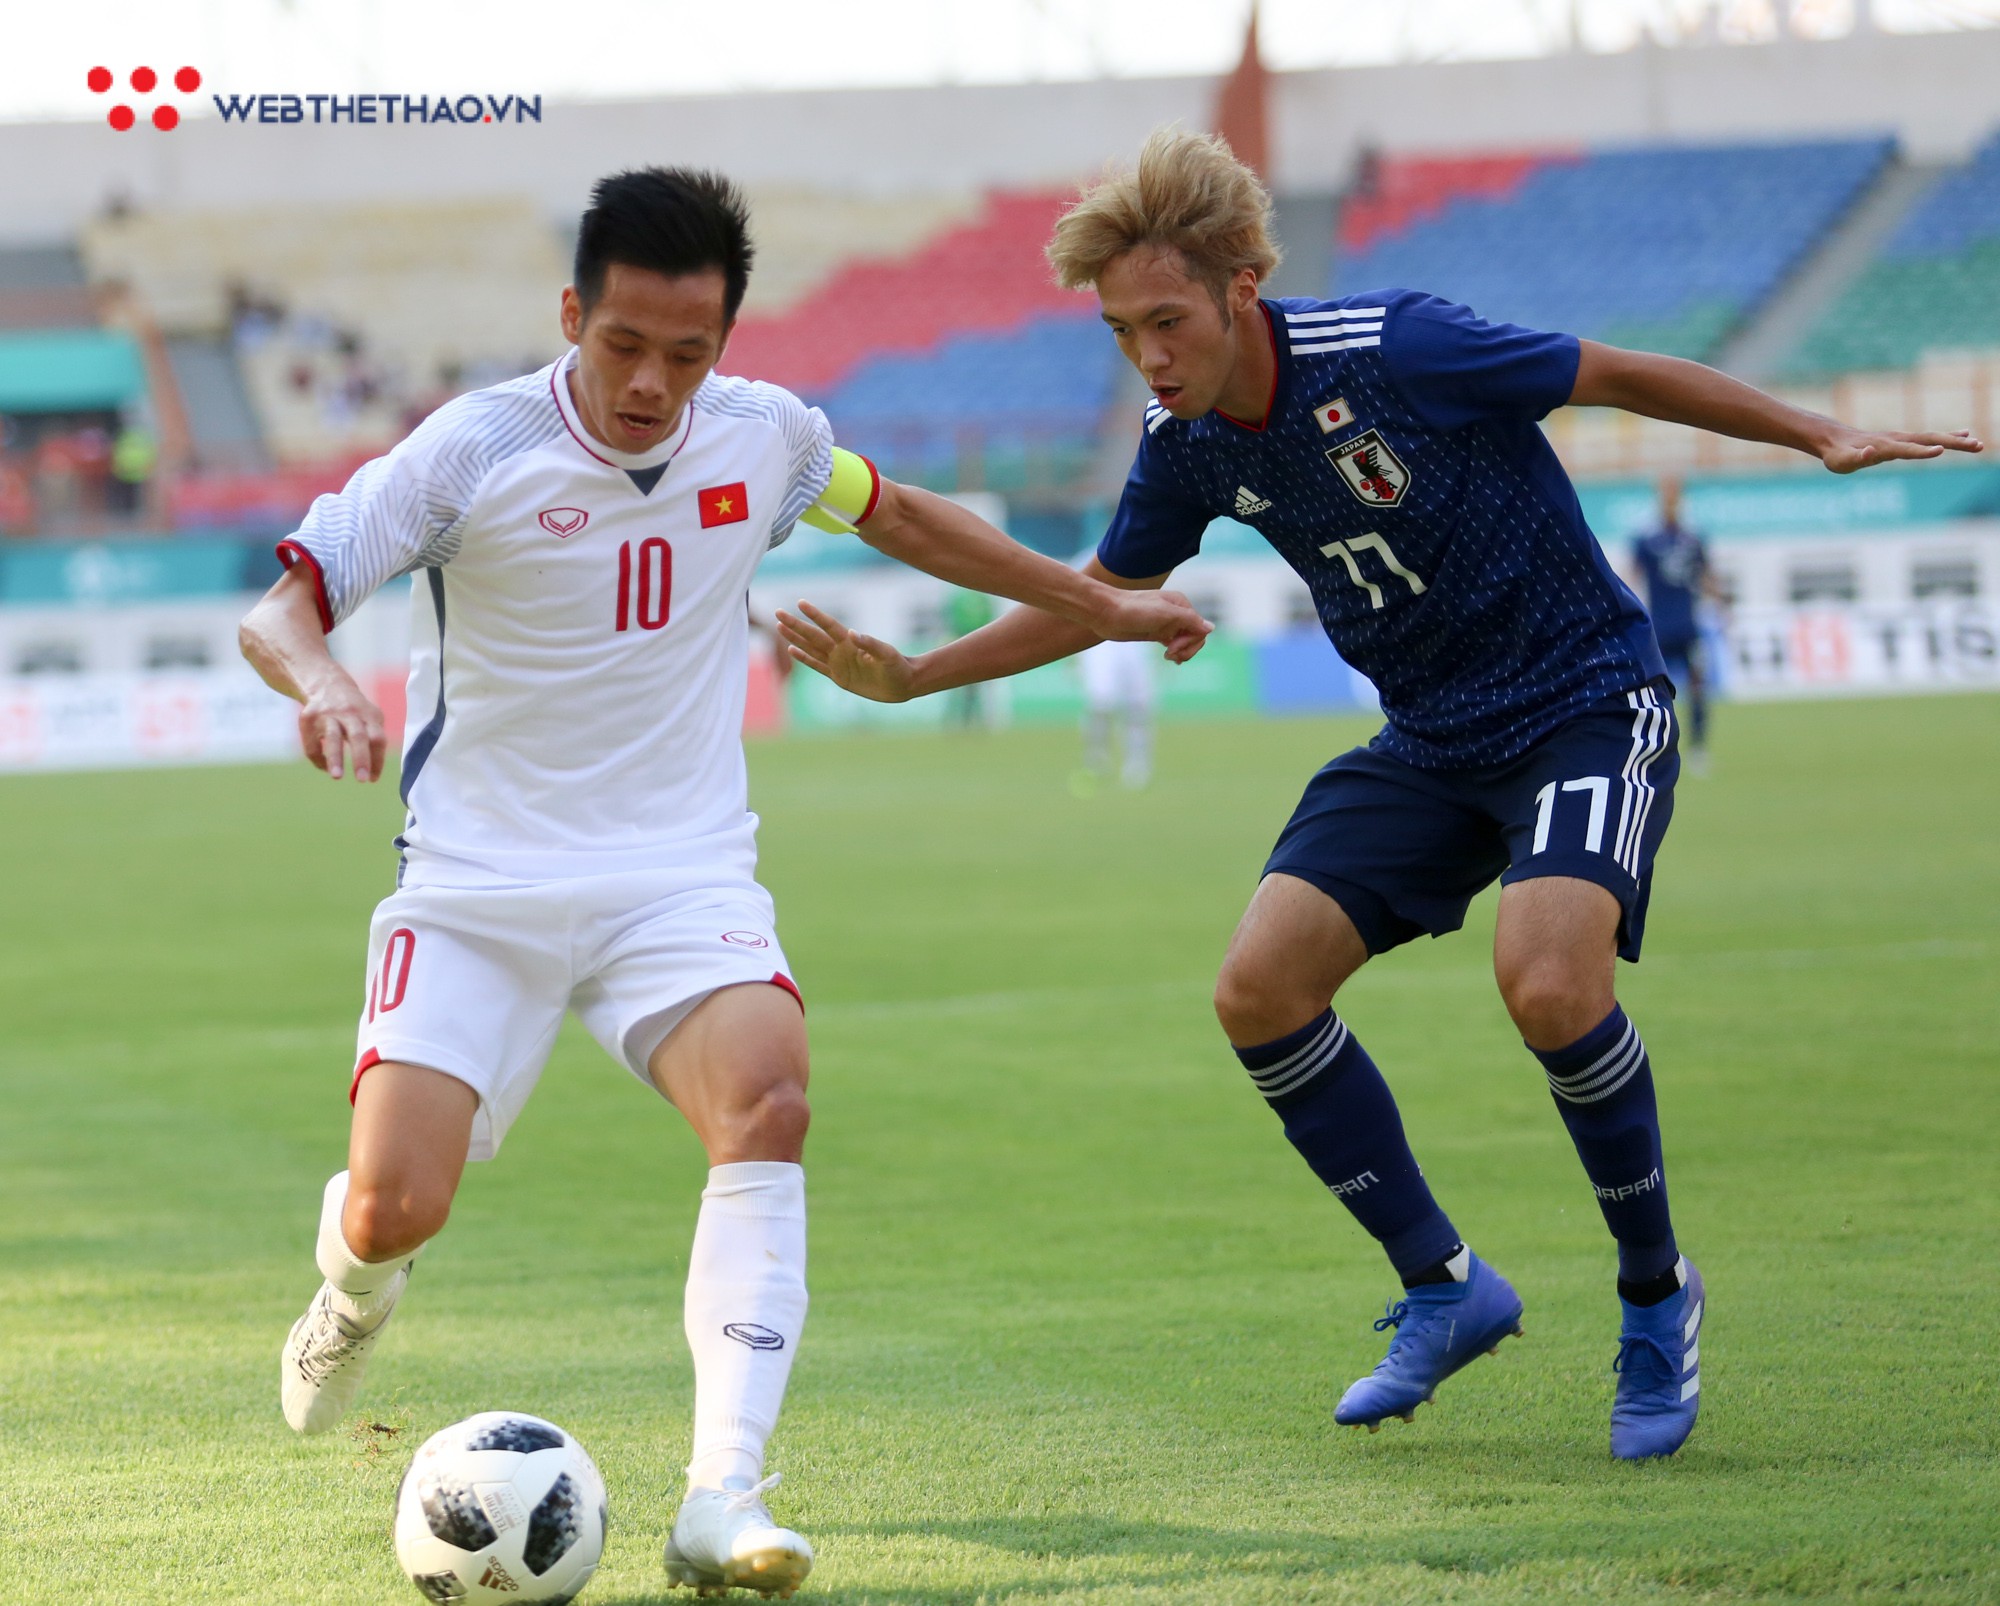 Báo Nhật Bản: Việt Nam là thế lực mới của bóng đá châu Á - Ảnh 1.